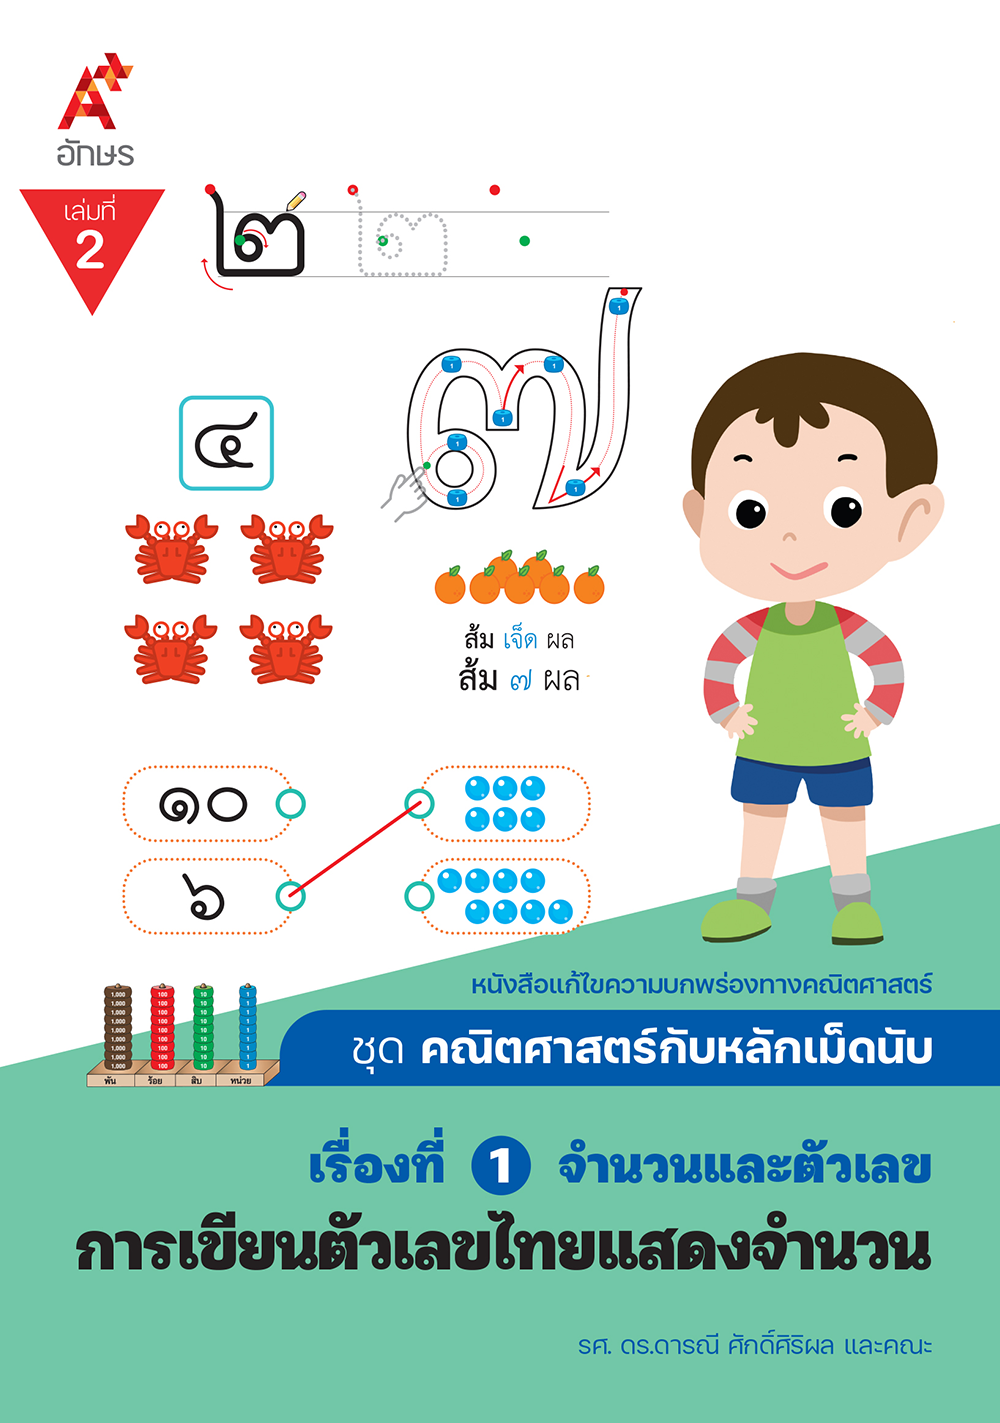 คณิตศาสตร์กับหลักเม็ดนับ เรื่องที่ 1 เล่ม 2 การเขียนตัวเลขไทยแสดงจำนวน